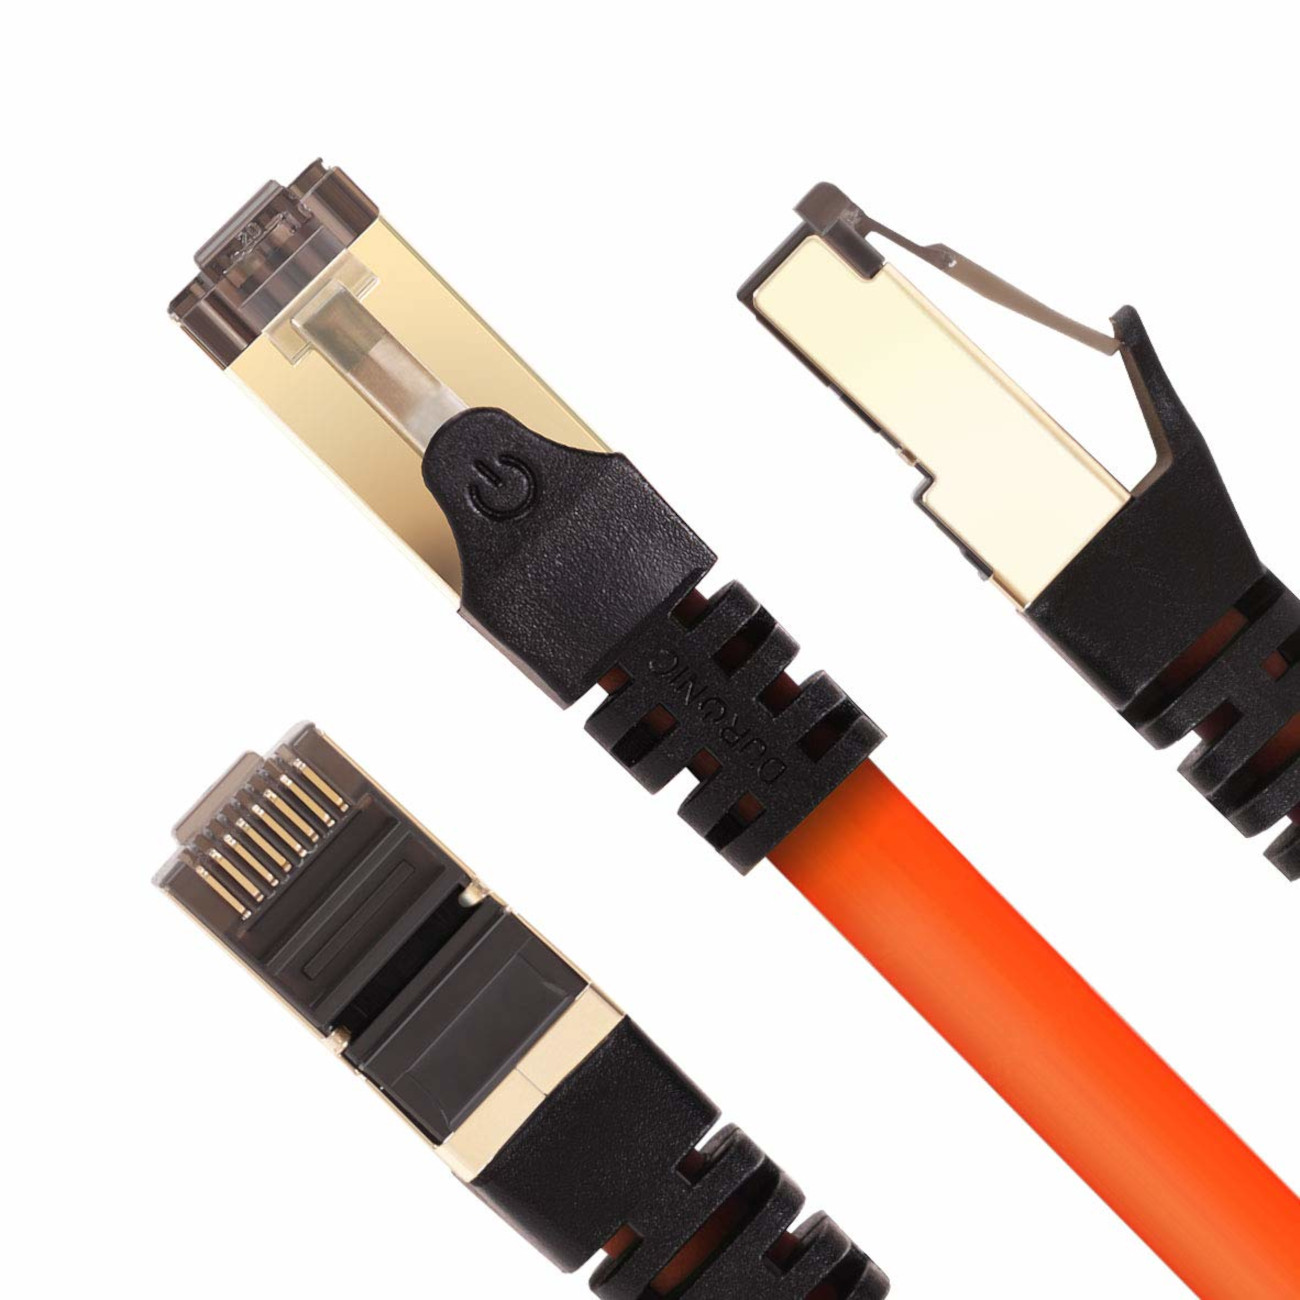 DURONIC CAT8 OE Konsole, Router und 1m 1 RJ45 m Ethernetkabel Patchkabel | MB/s | | für Netzwerkkabel, Lankabel 5.000